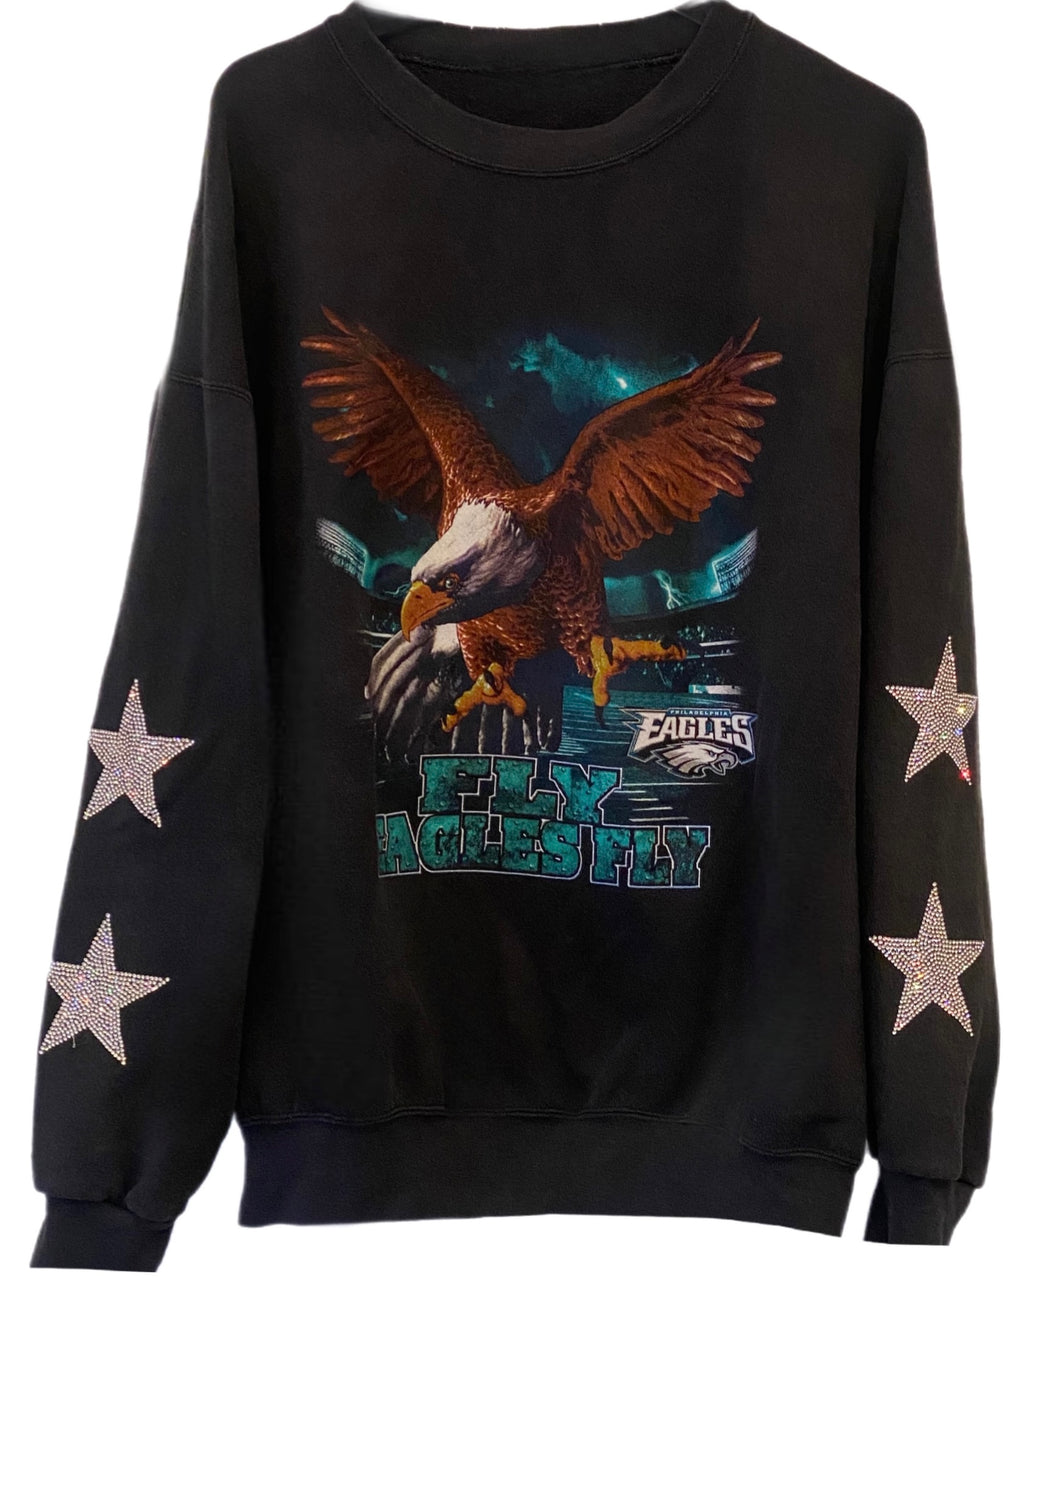 Philadelphia Eagles, NFL One of a KIND “Rare Find” Vintage Sweatshirt with Crystal Star Design